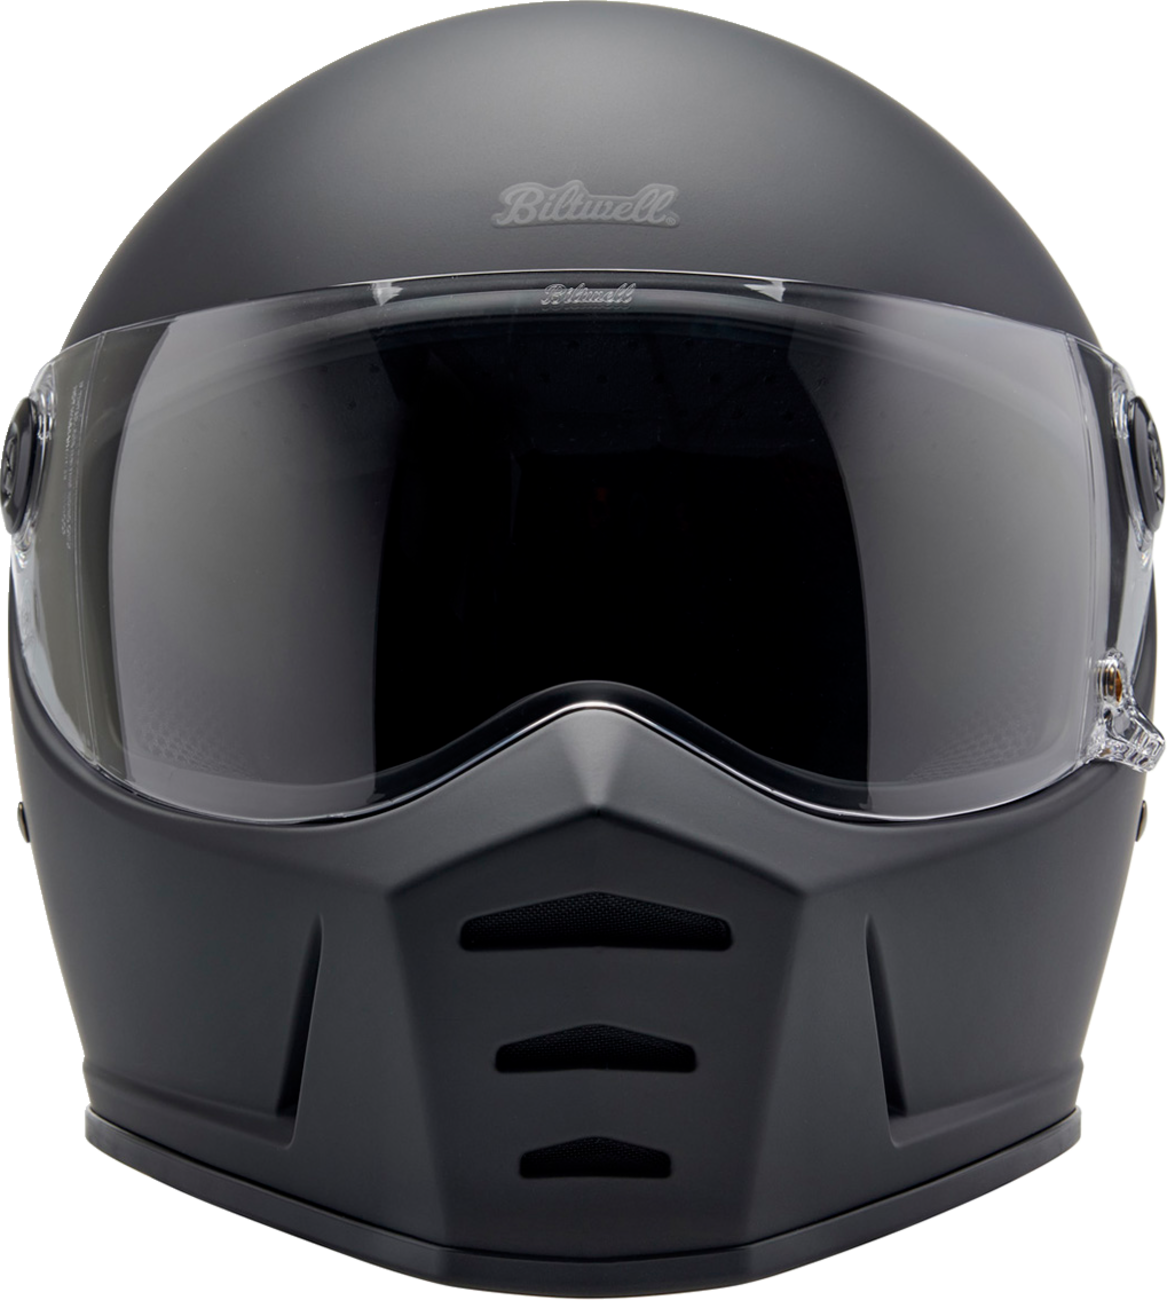 BILTWELL Lane Splitter Helmet - Flat Black - 2XL 1004-201-506